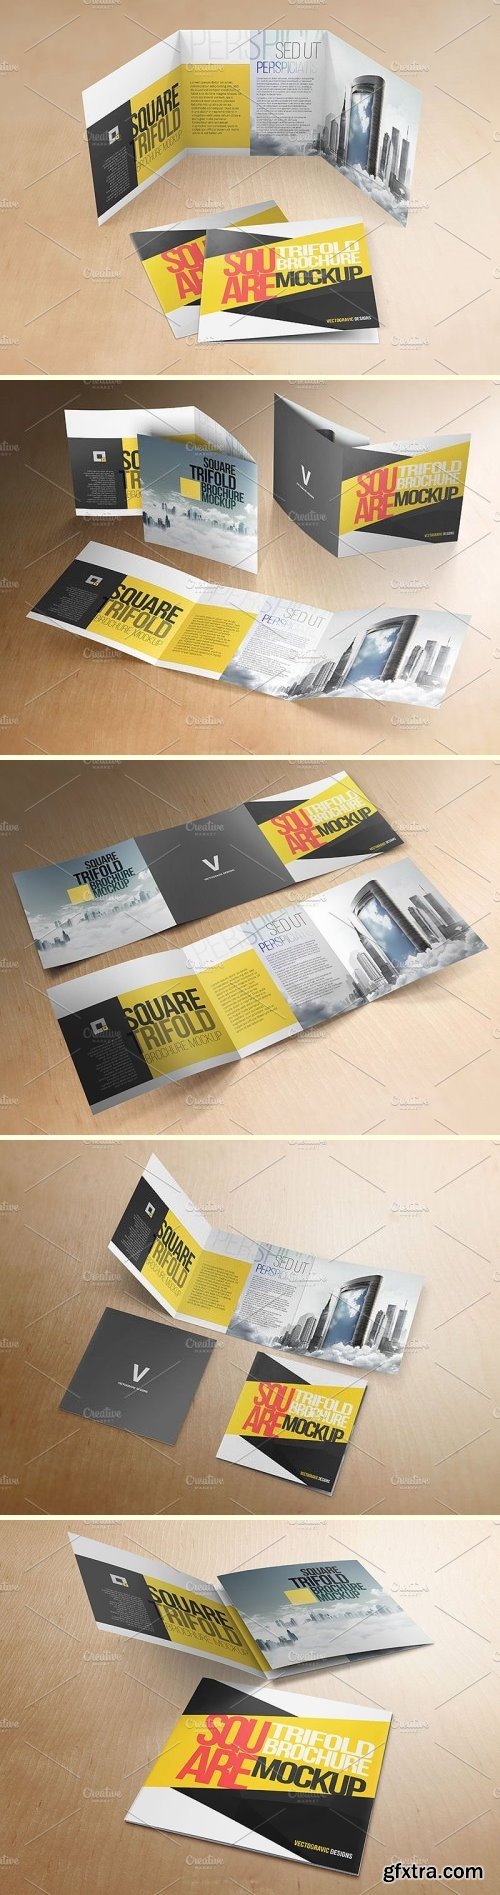 CM - Square Tri-fold Brochure Mock-ups v2 1590423